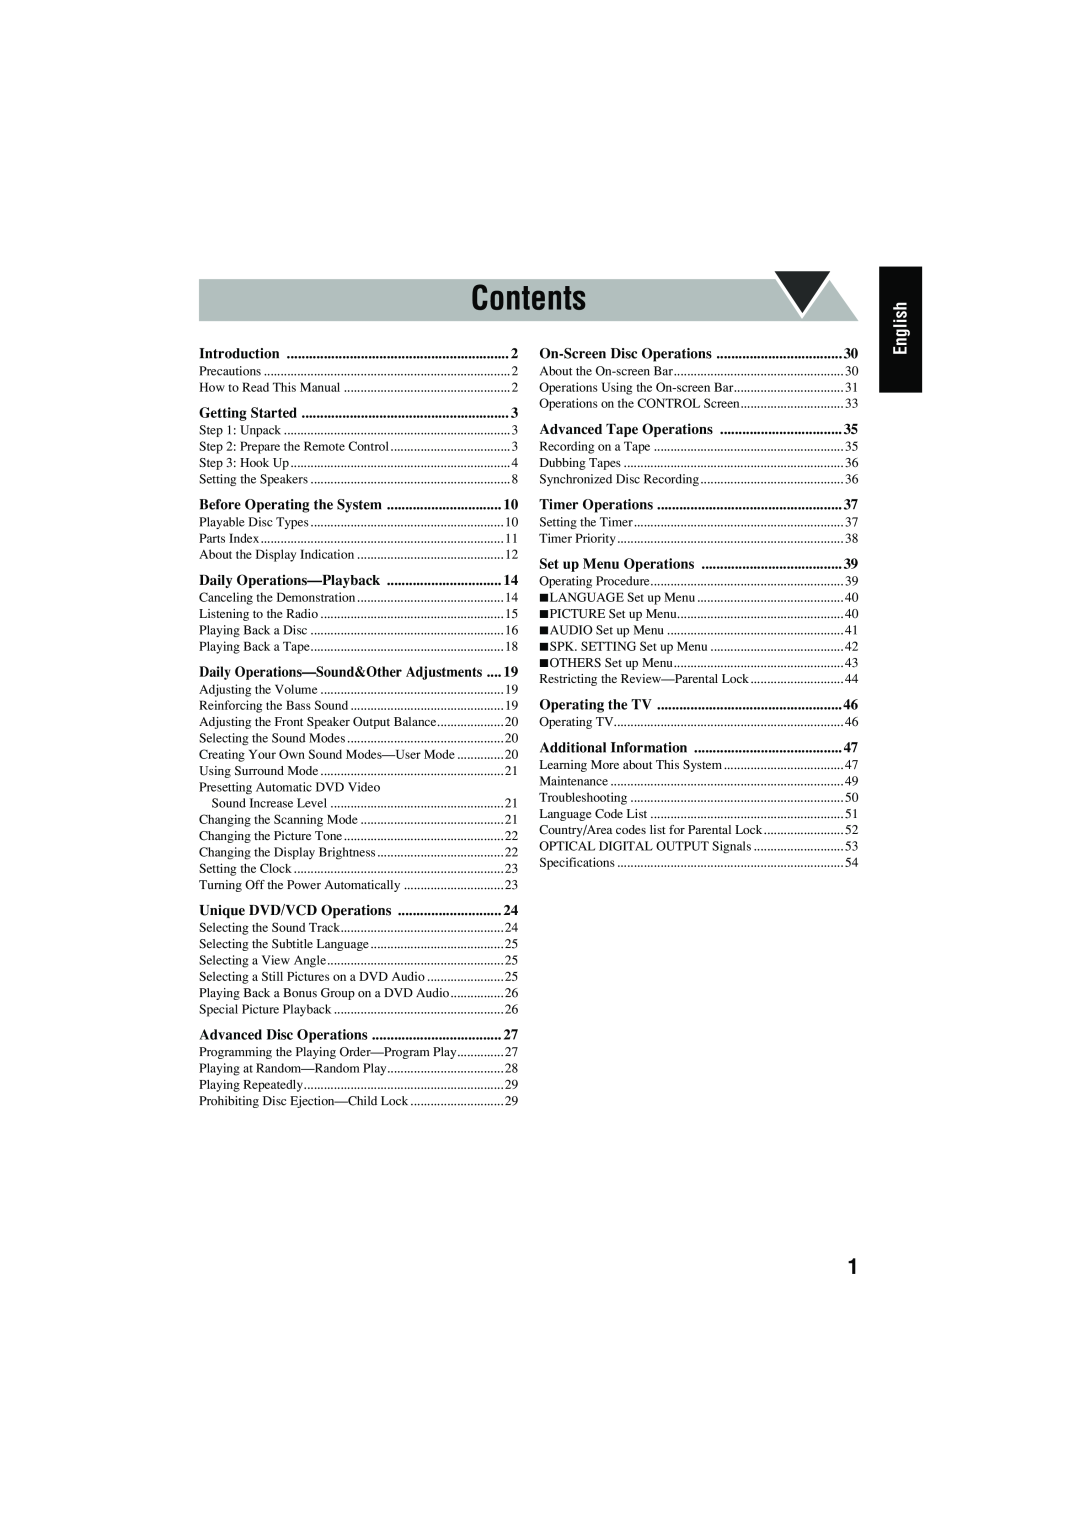 JVC CA-MXJD8 manual Contents, English, Precautions 